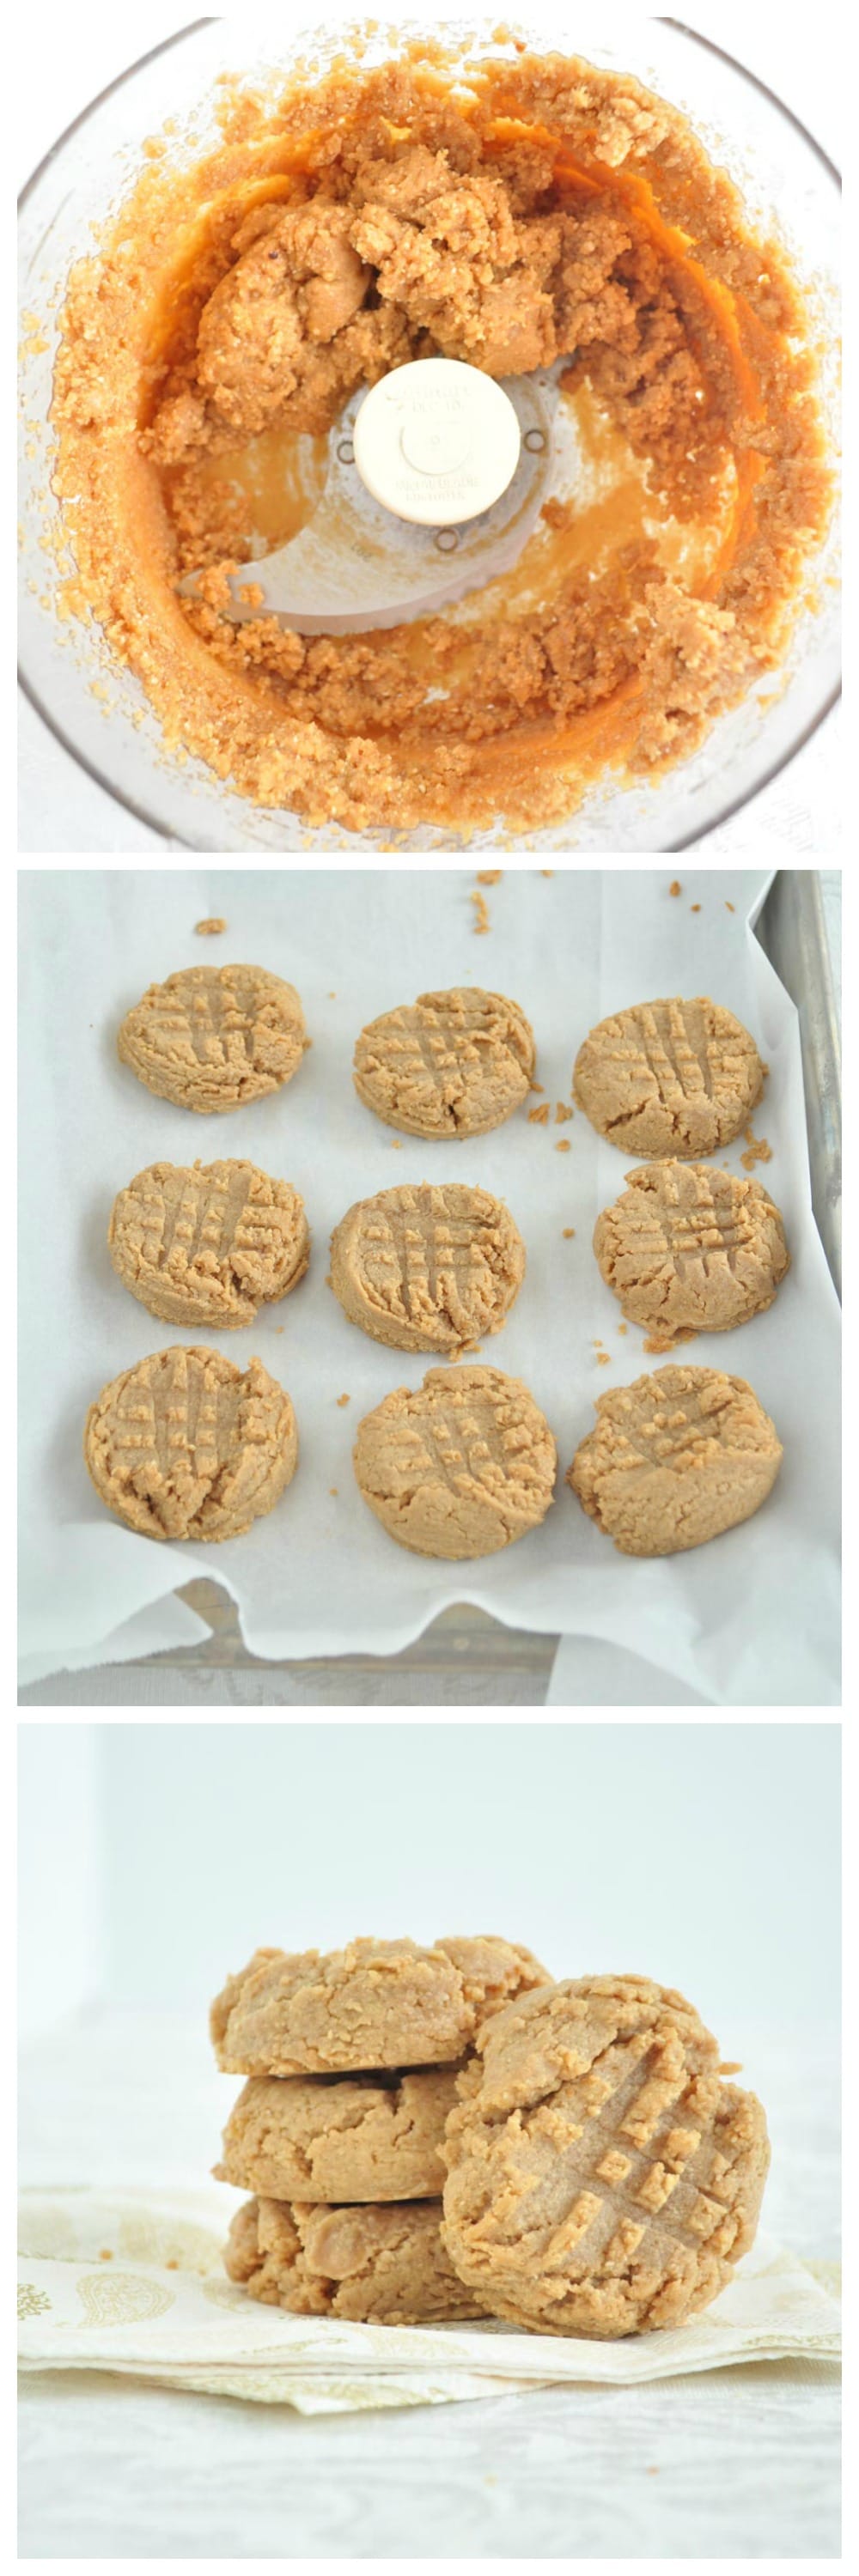 3 Ingredient Peanut Butter Cookies Steps